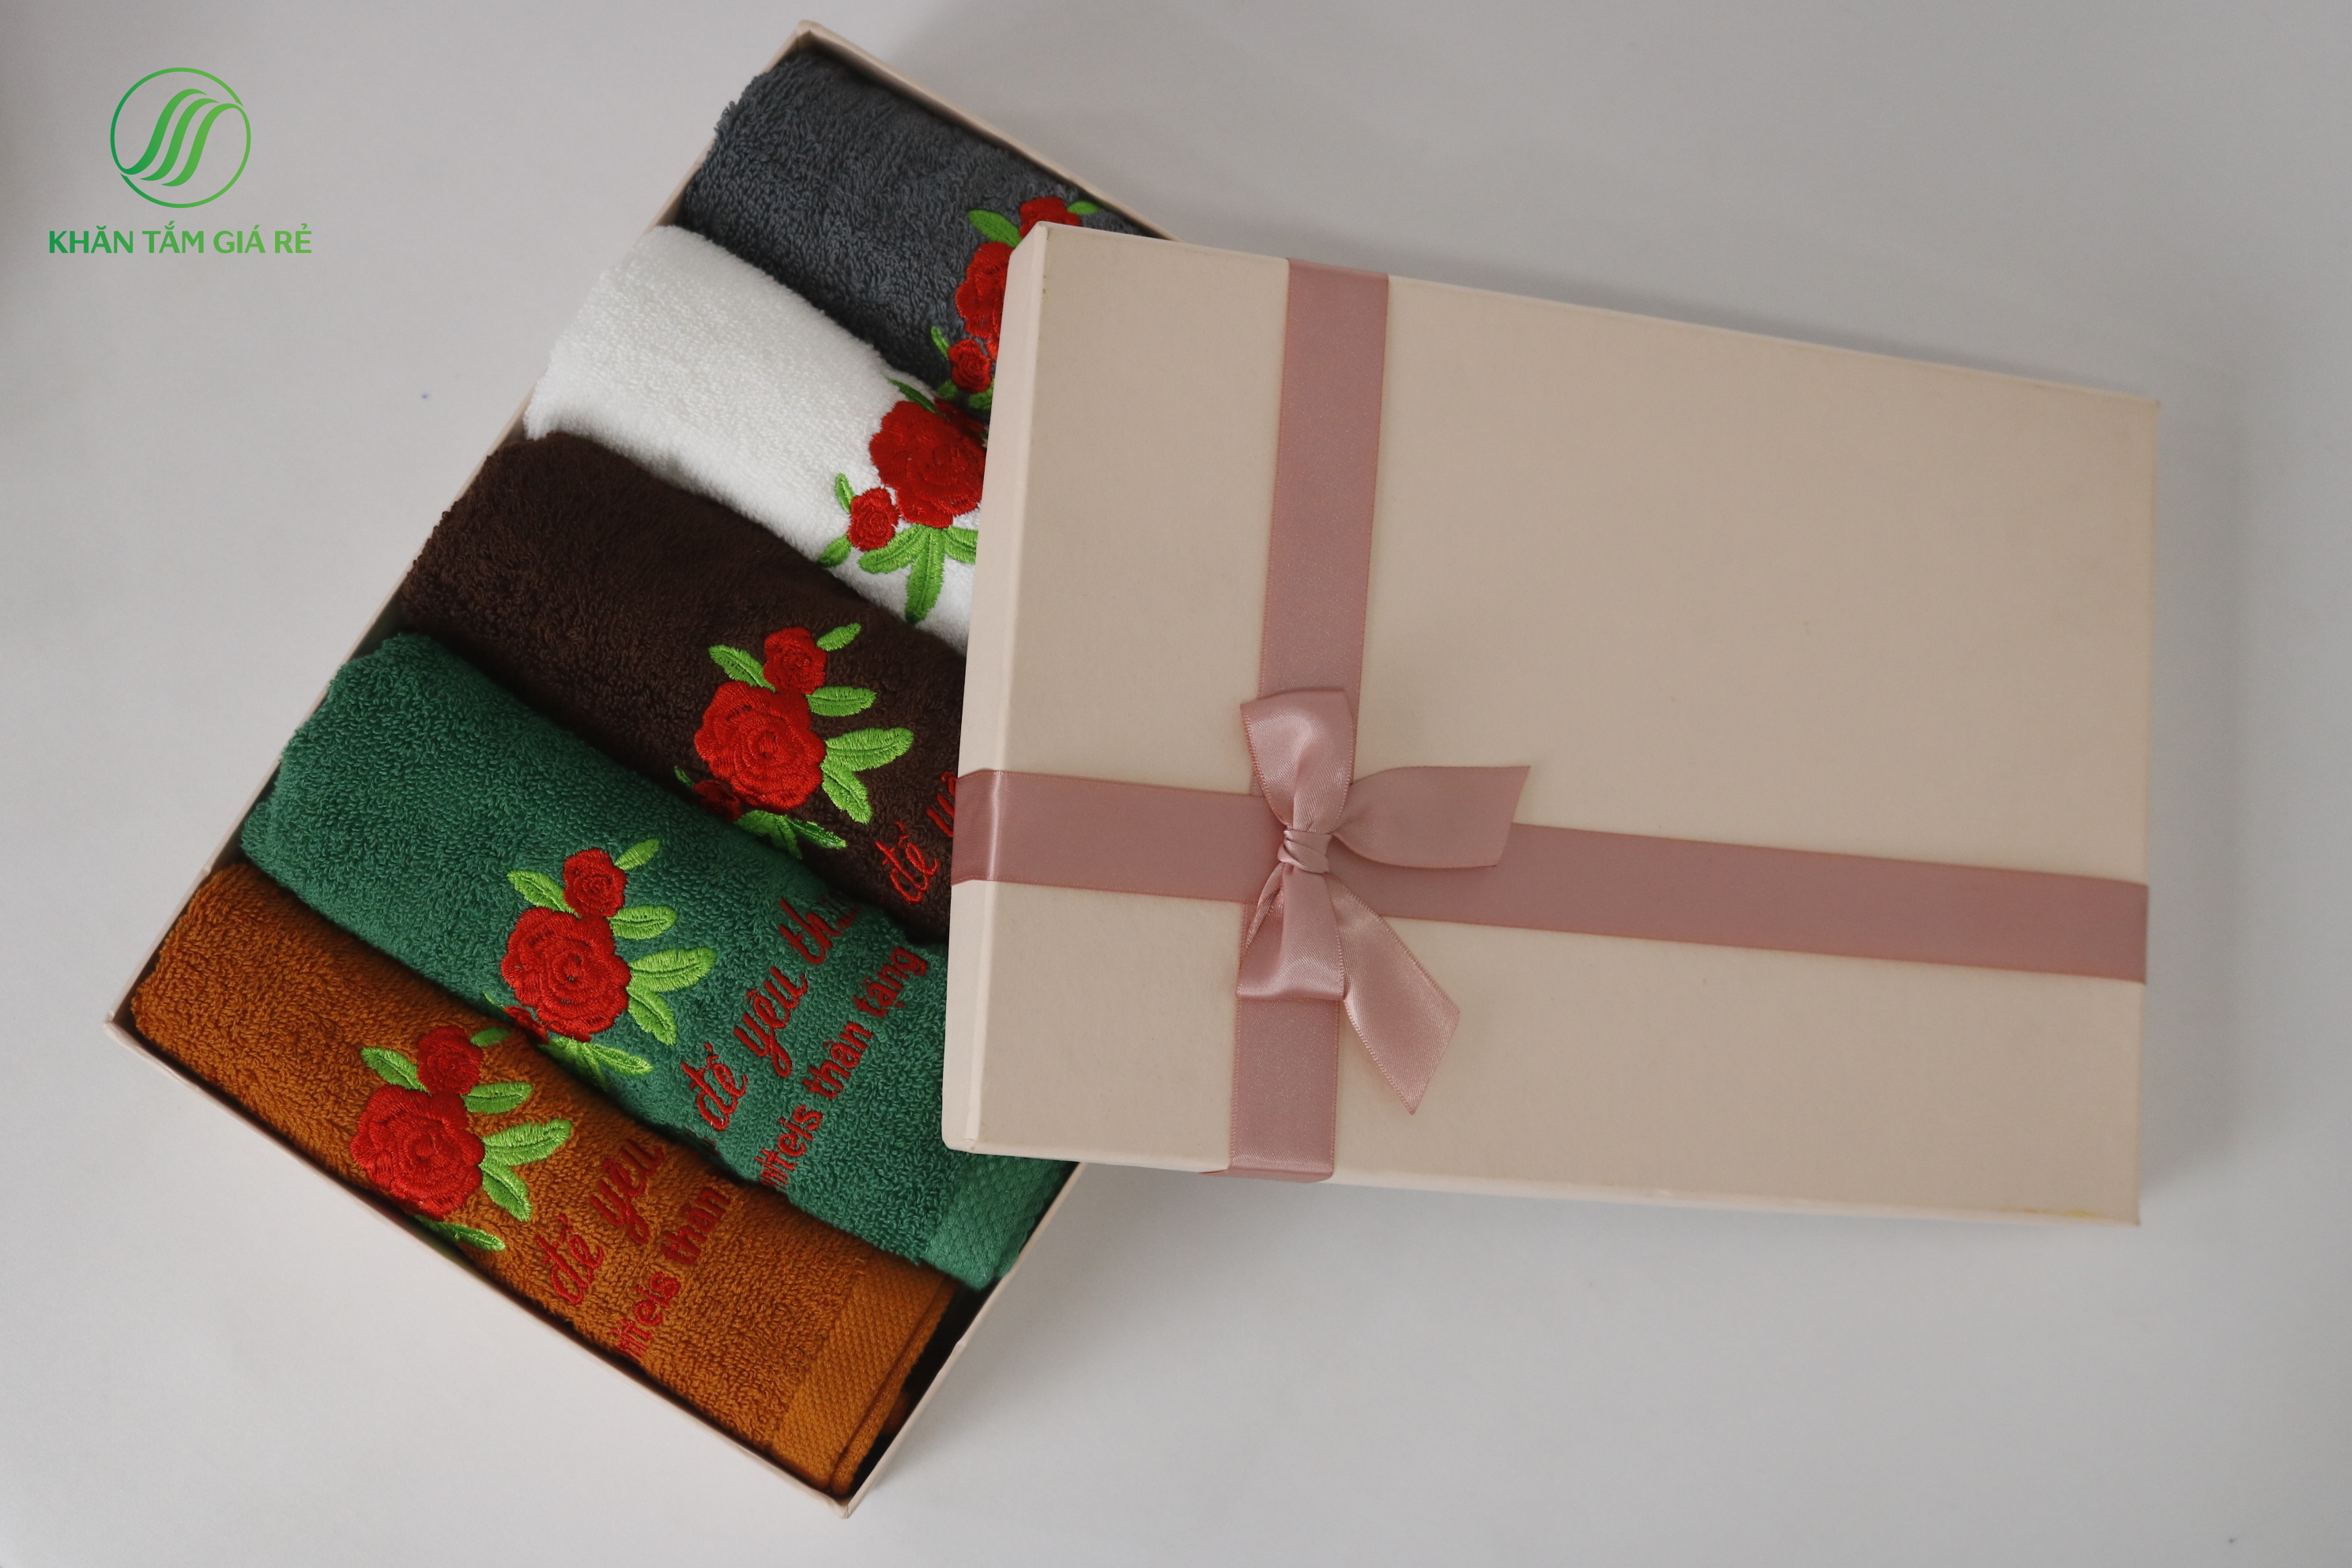 Đối với nhiều doanh nghiệp, khăn được coi là món quà có giá trị và ý nghĩa nhất để tặng quà 8-3 đến nhân viên và khách hàng